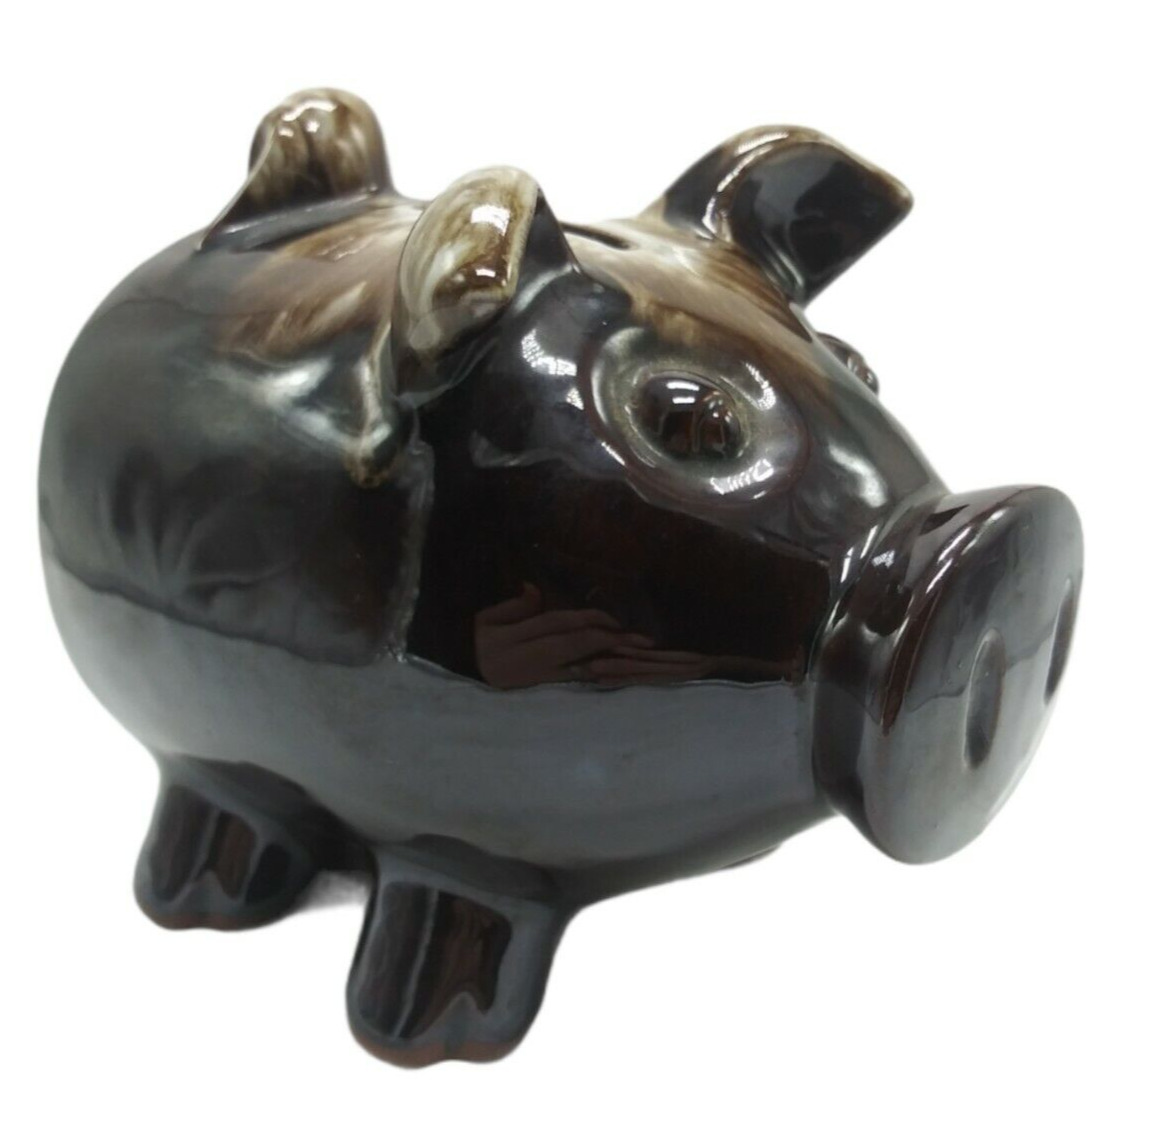 Redware Pottery Pig Bank Figurine Brown Glaze Cork Stopper Vintage